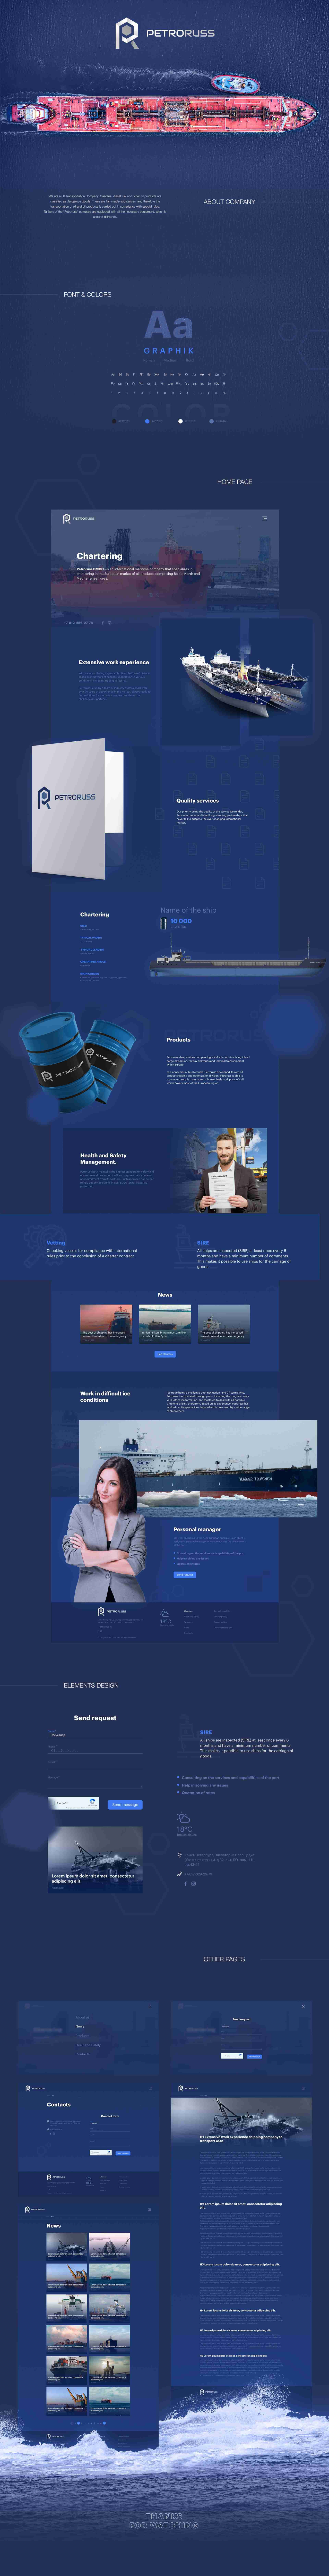 Corporate website for international maritime company - Petrorus